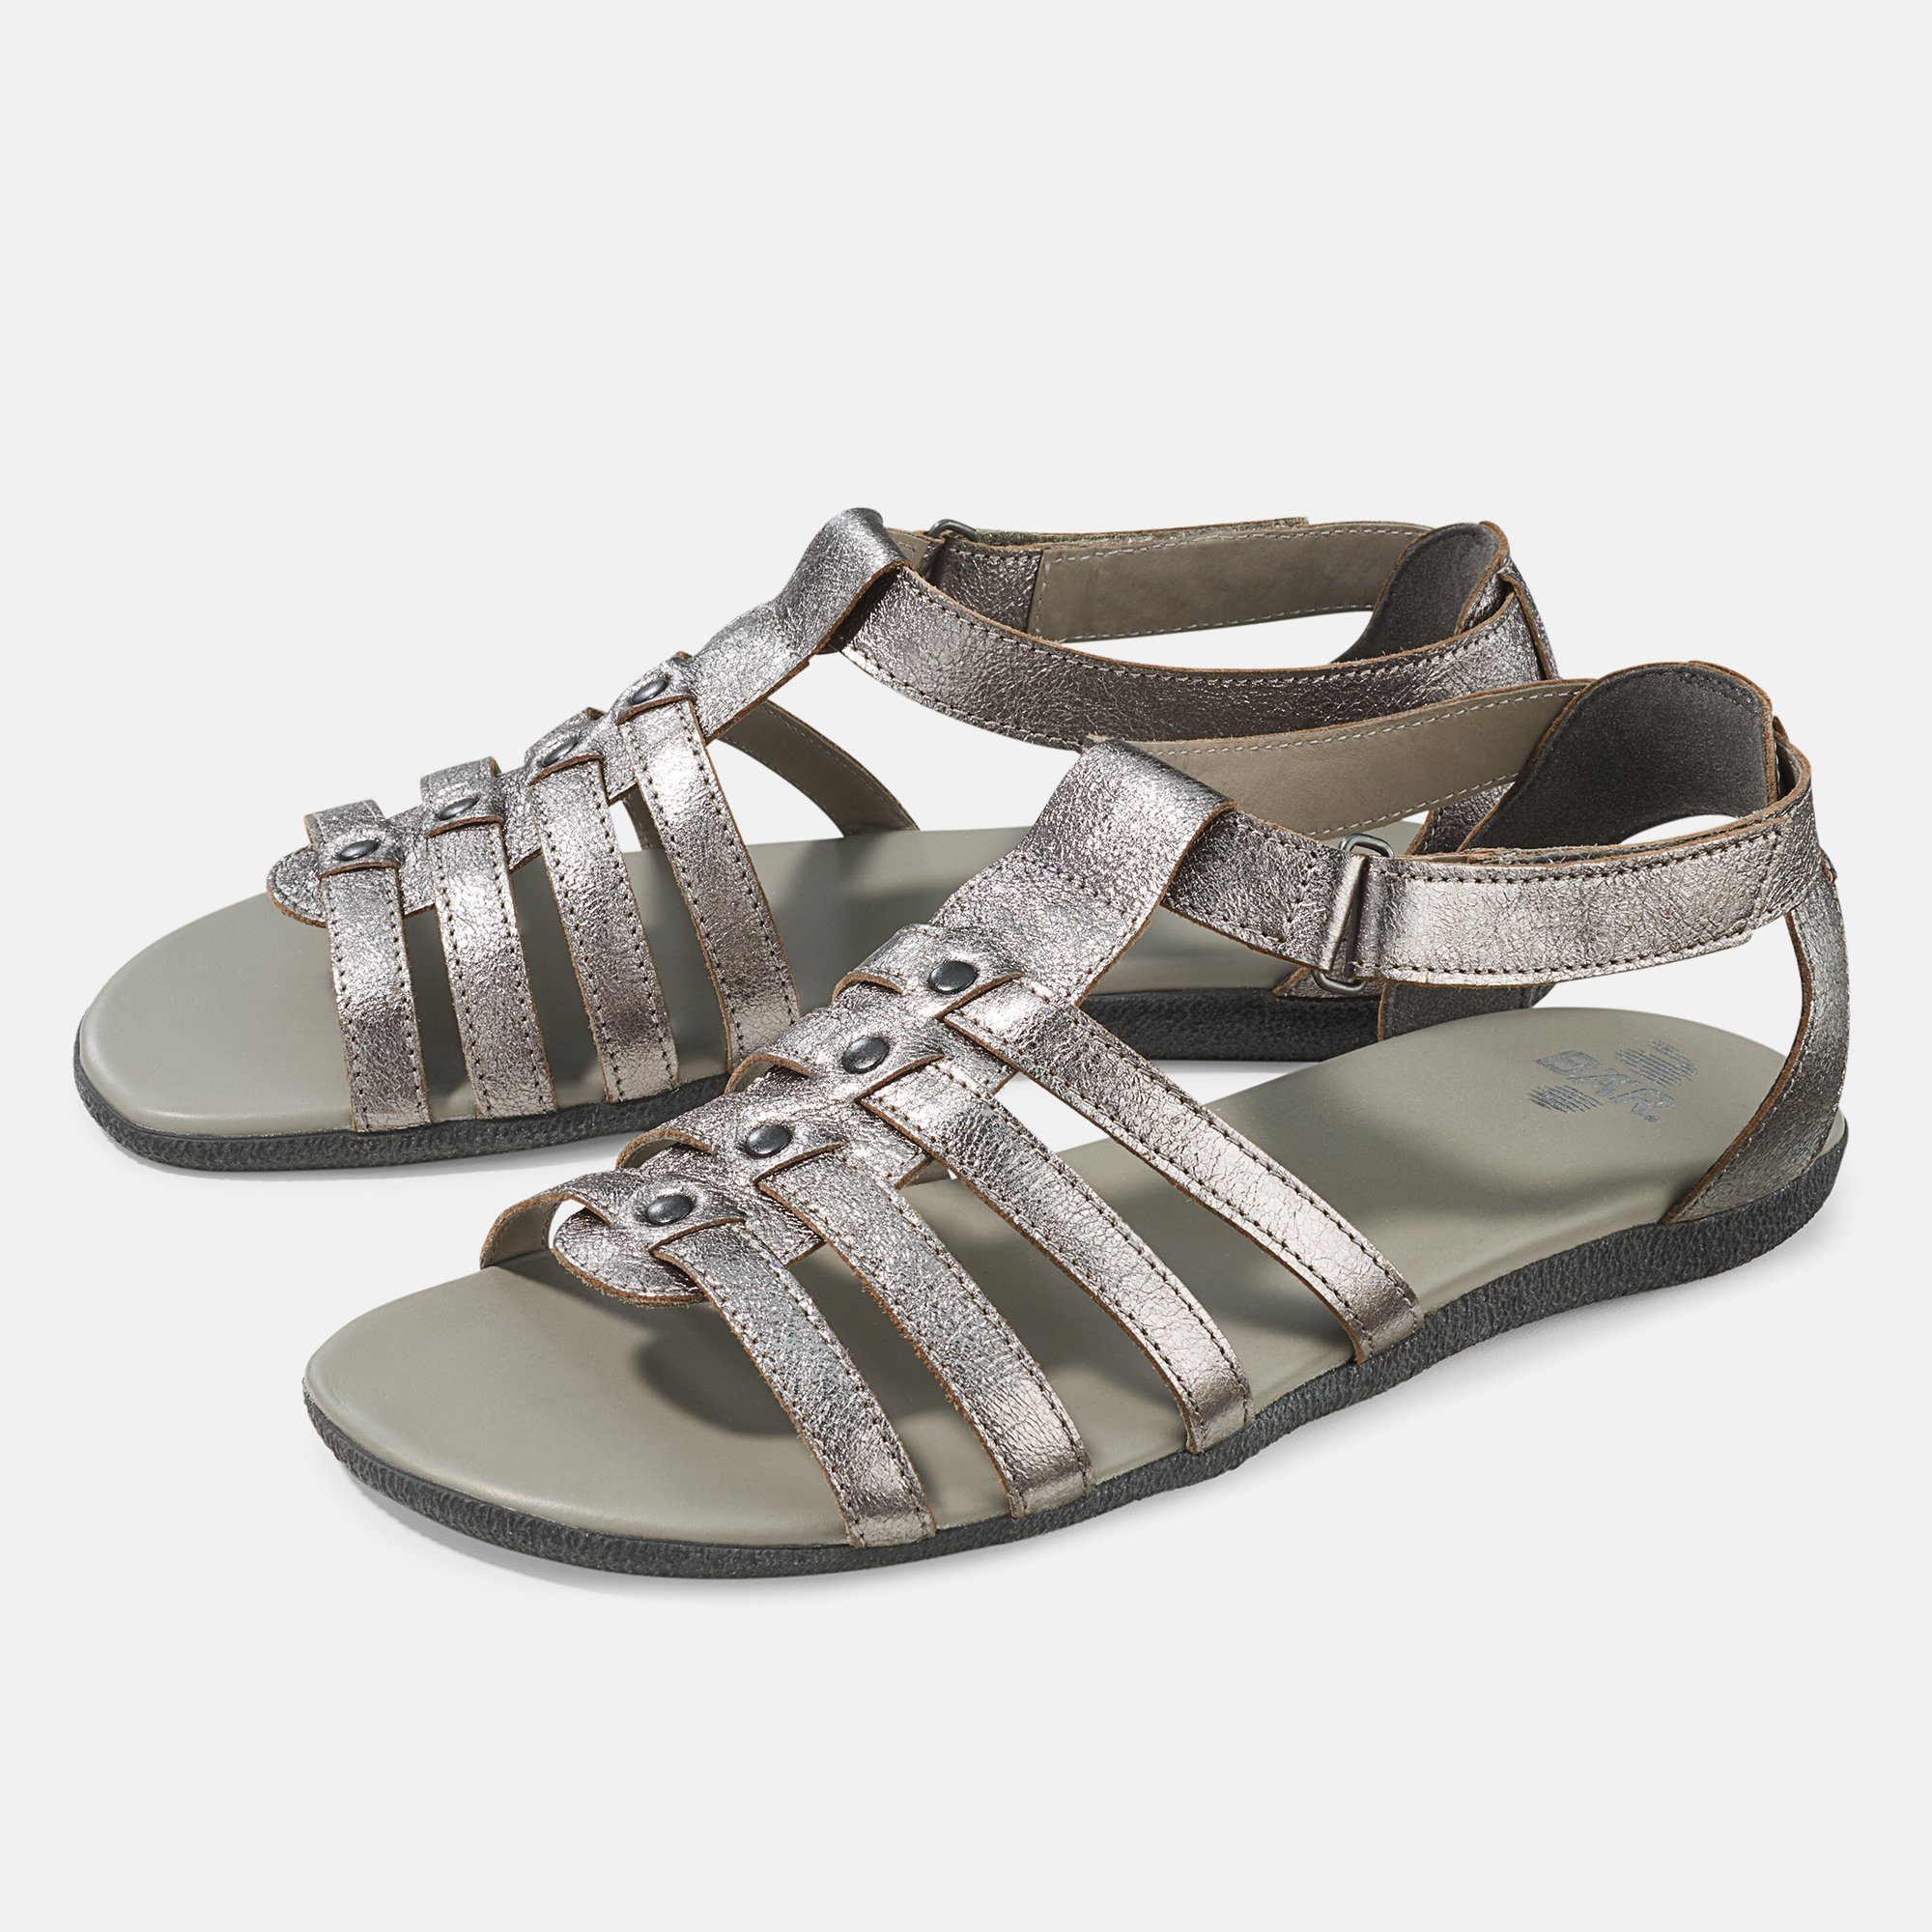 BÄR Damenschuh - Modell Matanza in der Farbe Silber Sandalette mit Klettverschluss, aus echtem Leder